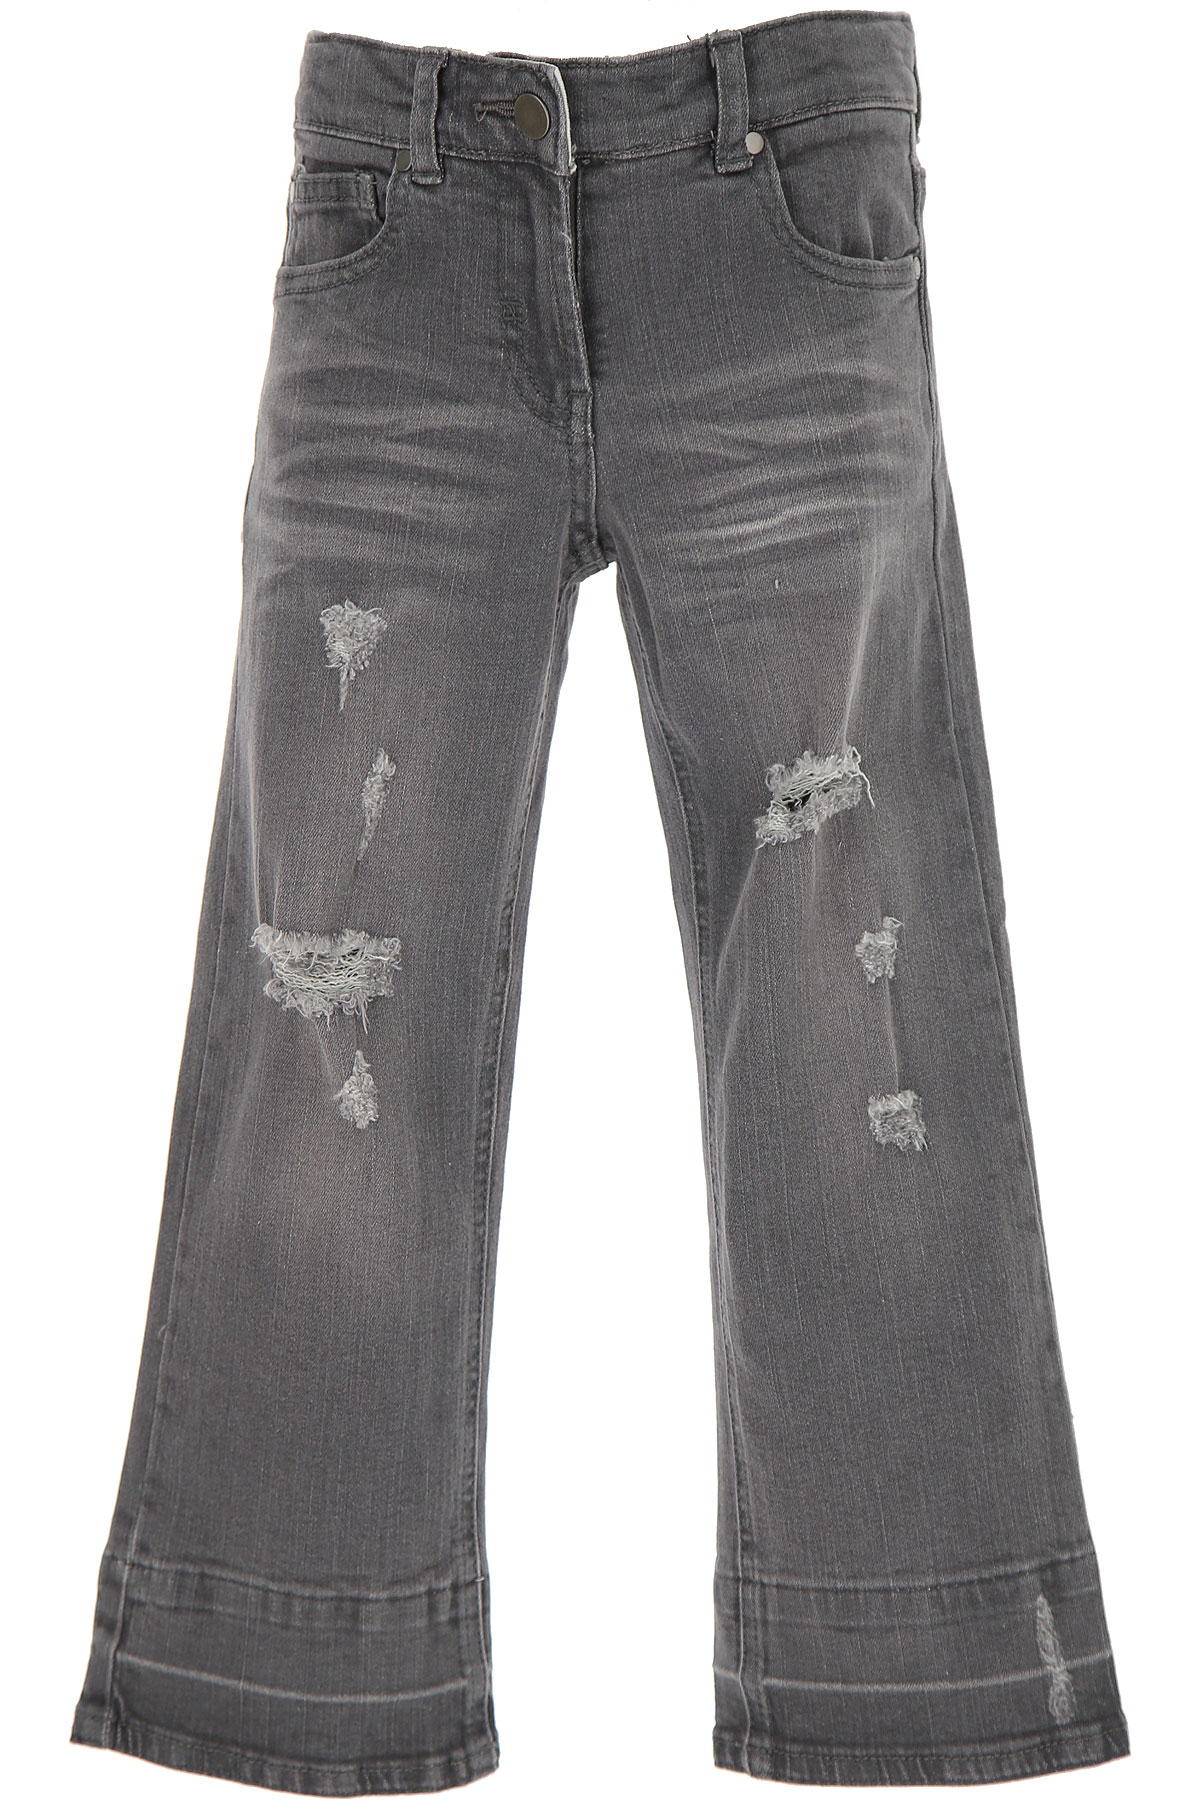 Stella McCartney Kinder Jeans für Mädchen Günstig im Sale, Denim Grau, Baumwolle, 2017, 12Y 4Y